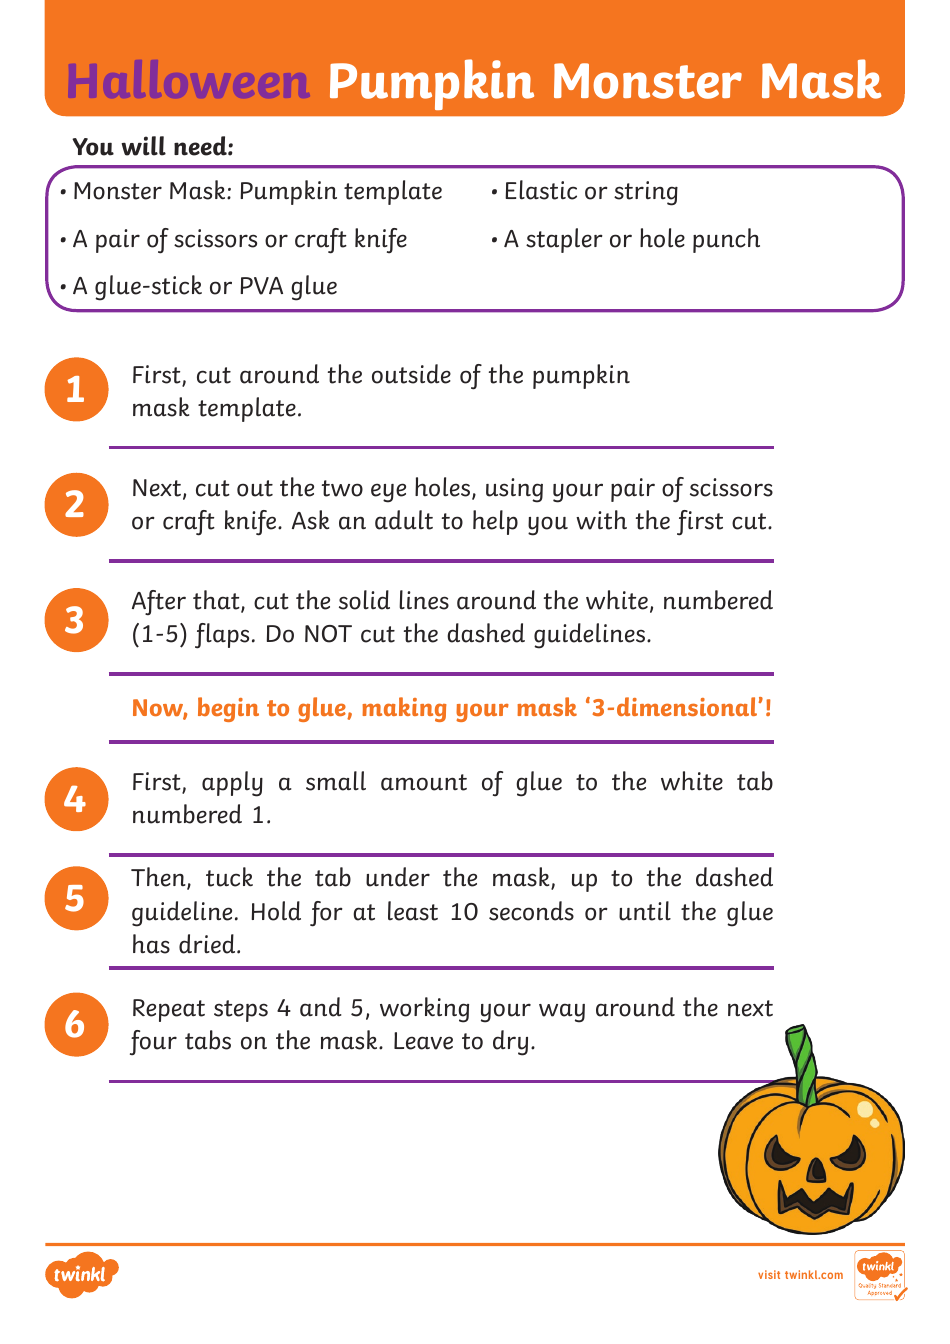 Halloween Pumpkin Monster Mask Template, Page 1